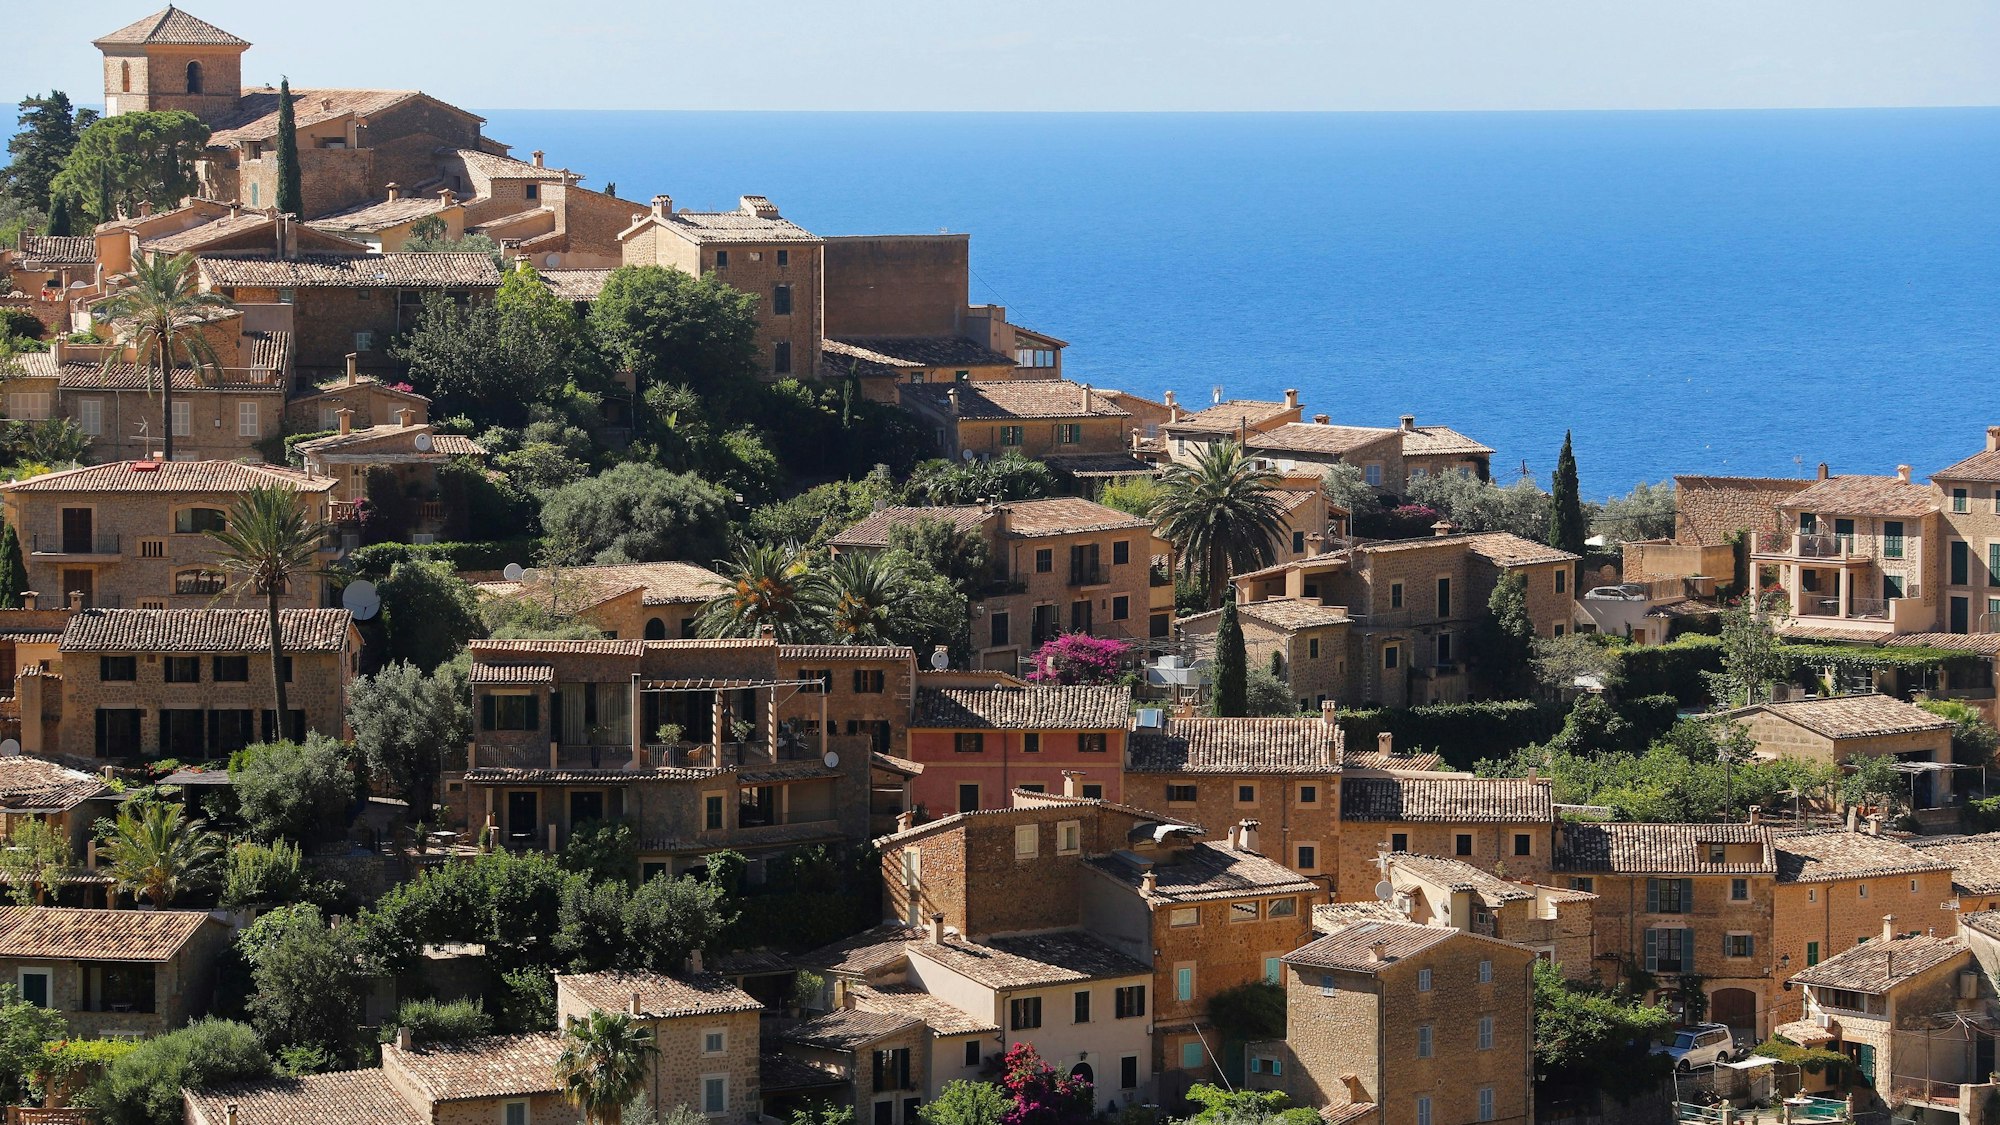 Blick auf das Dorf mit vielen deutschen Einwohnern oder Besitzern von Zweitwohnsitzen auf Mallorca.